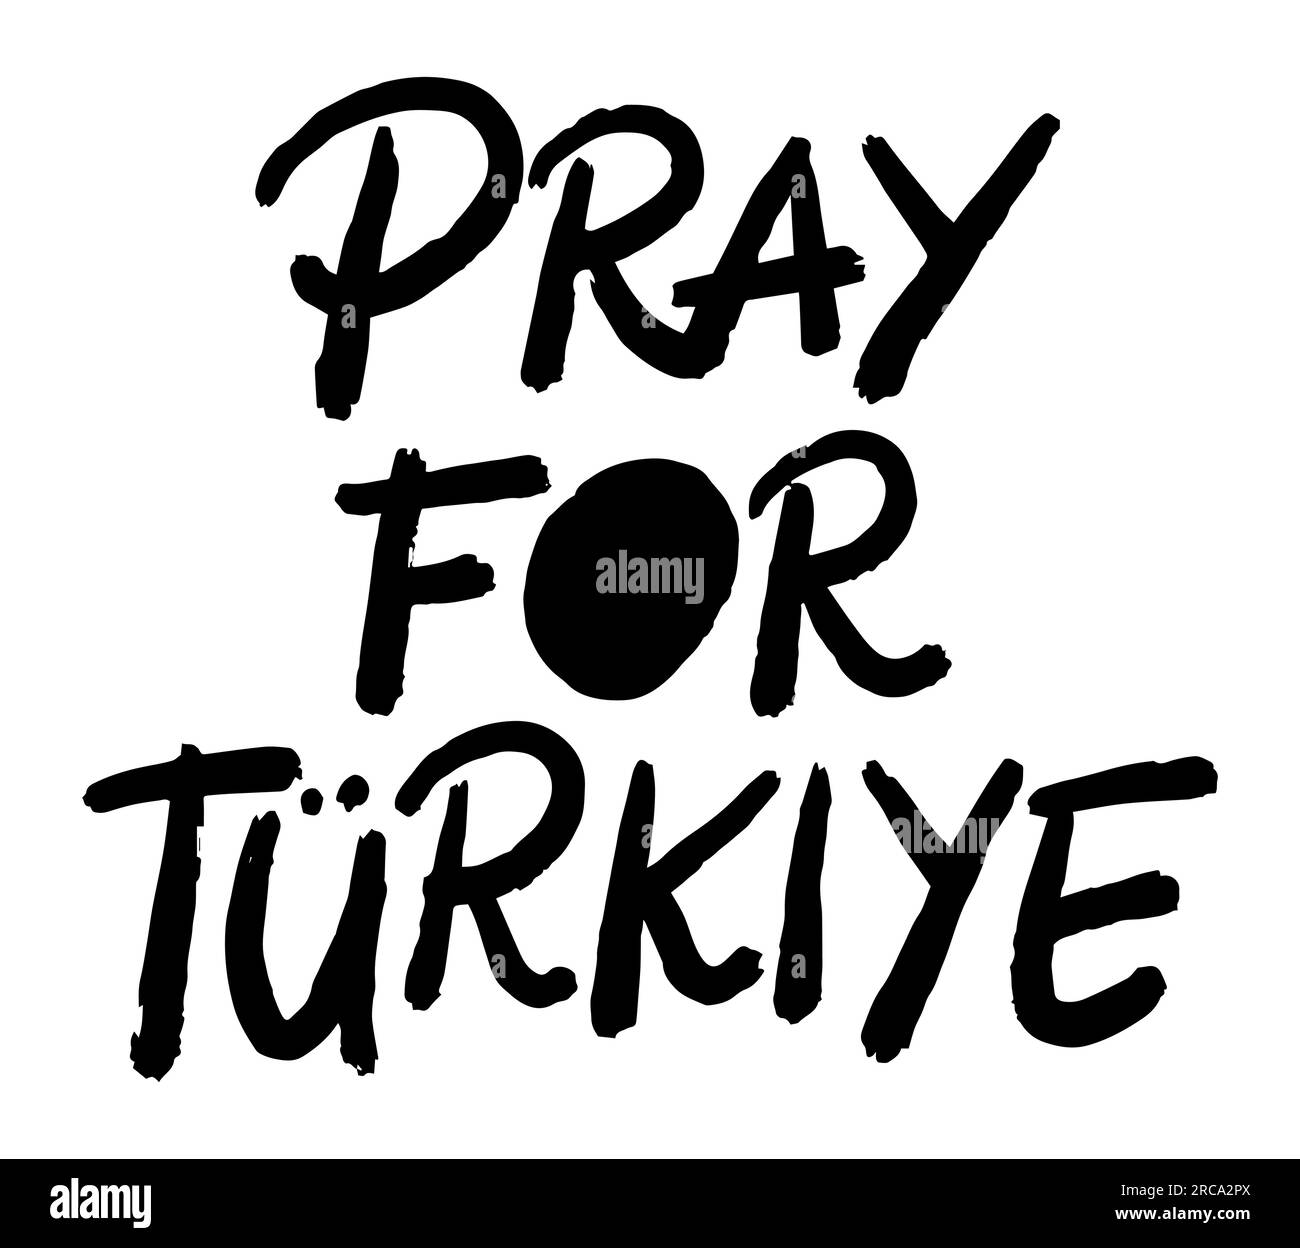 Pregate per la Turchia citando tipografia, testo font, illustrazione vettoriale isolata su sfondo bianco, Turkiye, messaggio di sensibilizzazione Illustrazione Vettoriale